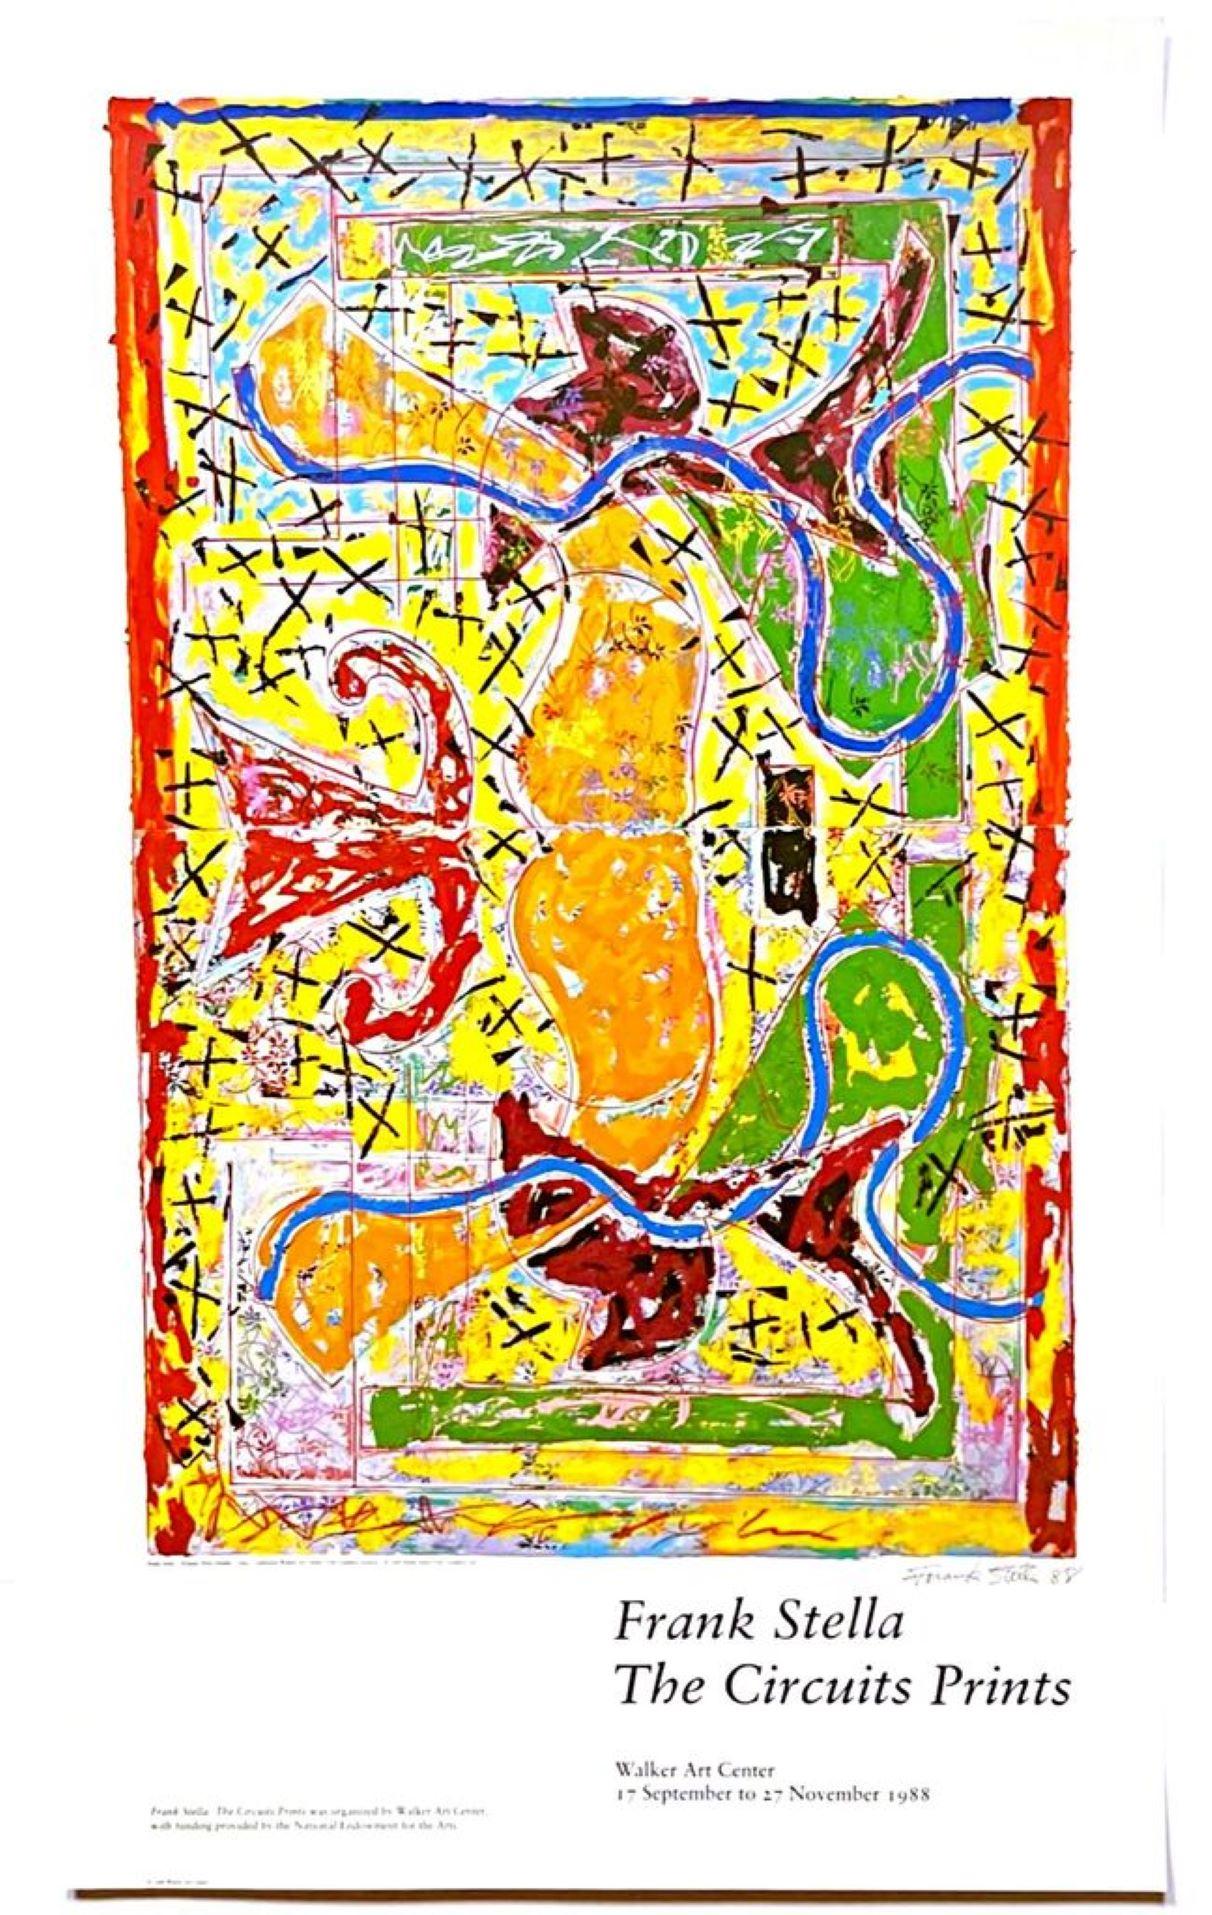 Frank Stella
Frank Stella The Circuit Prints (handsigniert), 1988
Farboffsetlithografie-Poster (handsigniert von Frank Stella)
Signiert und datiert 88 in Tinte von Frank Stella direkt unter dem Bild
Auflage von 500 Stück (einmalig signiert)
38 × 23